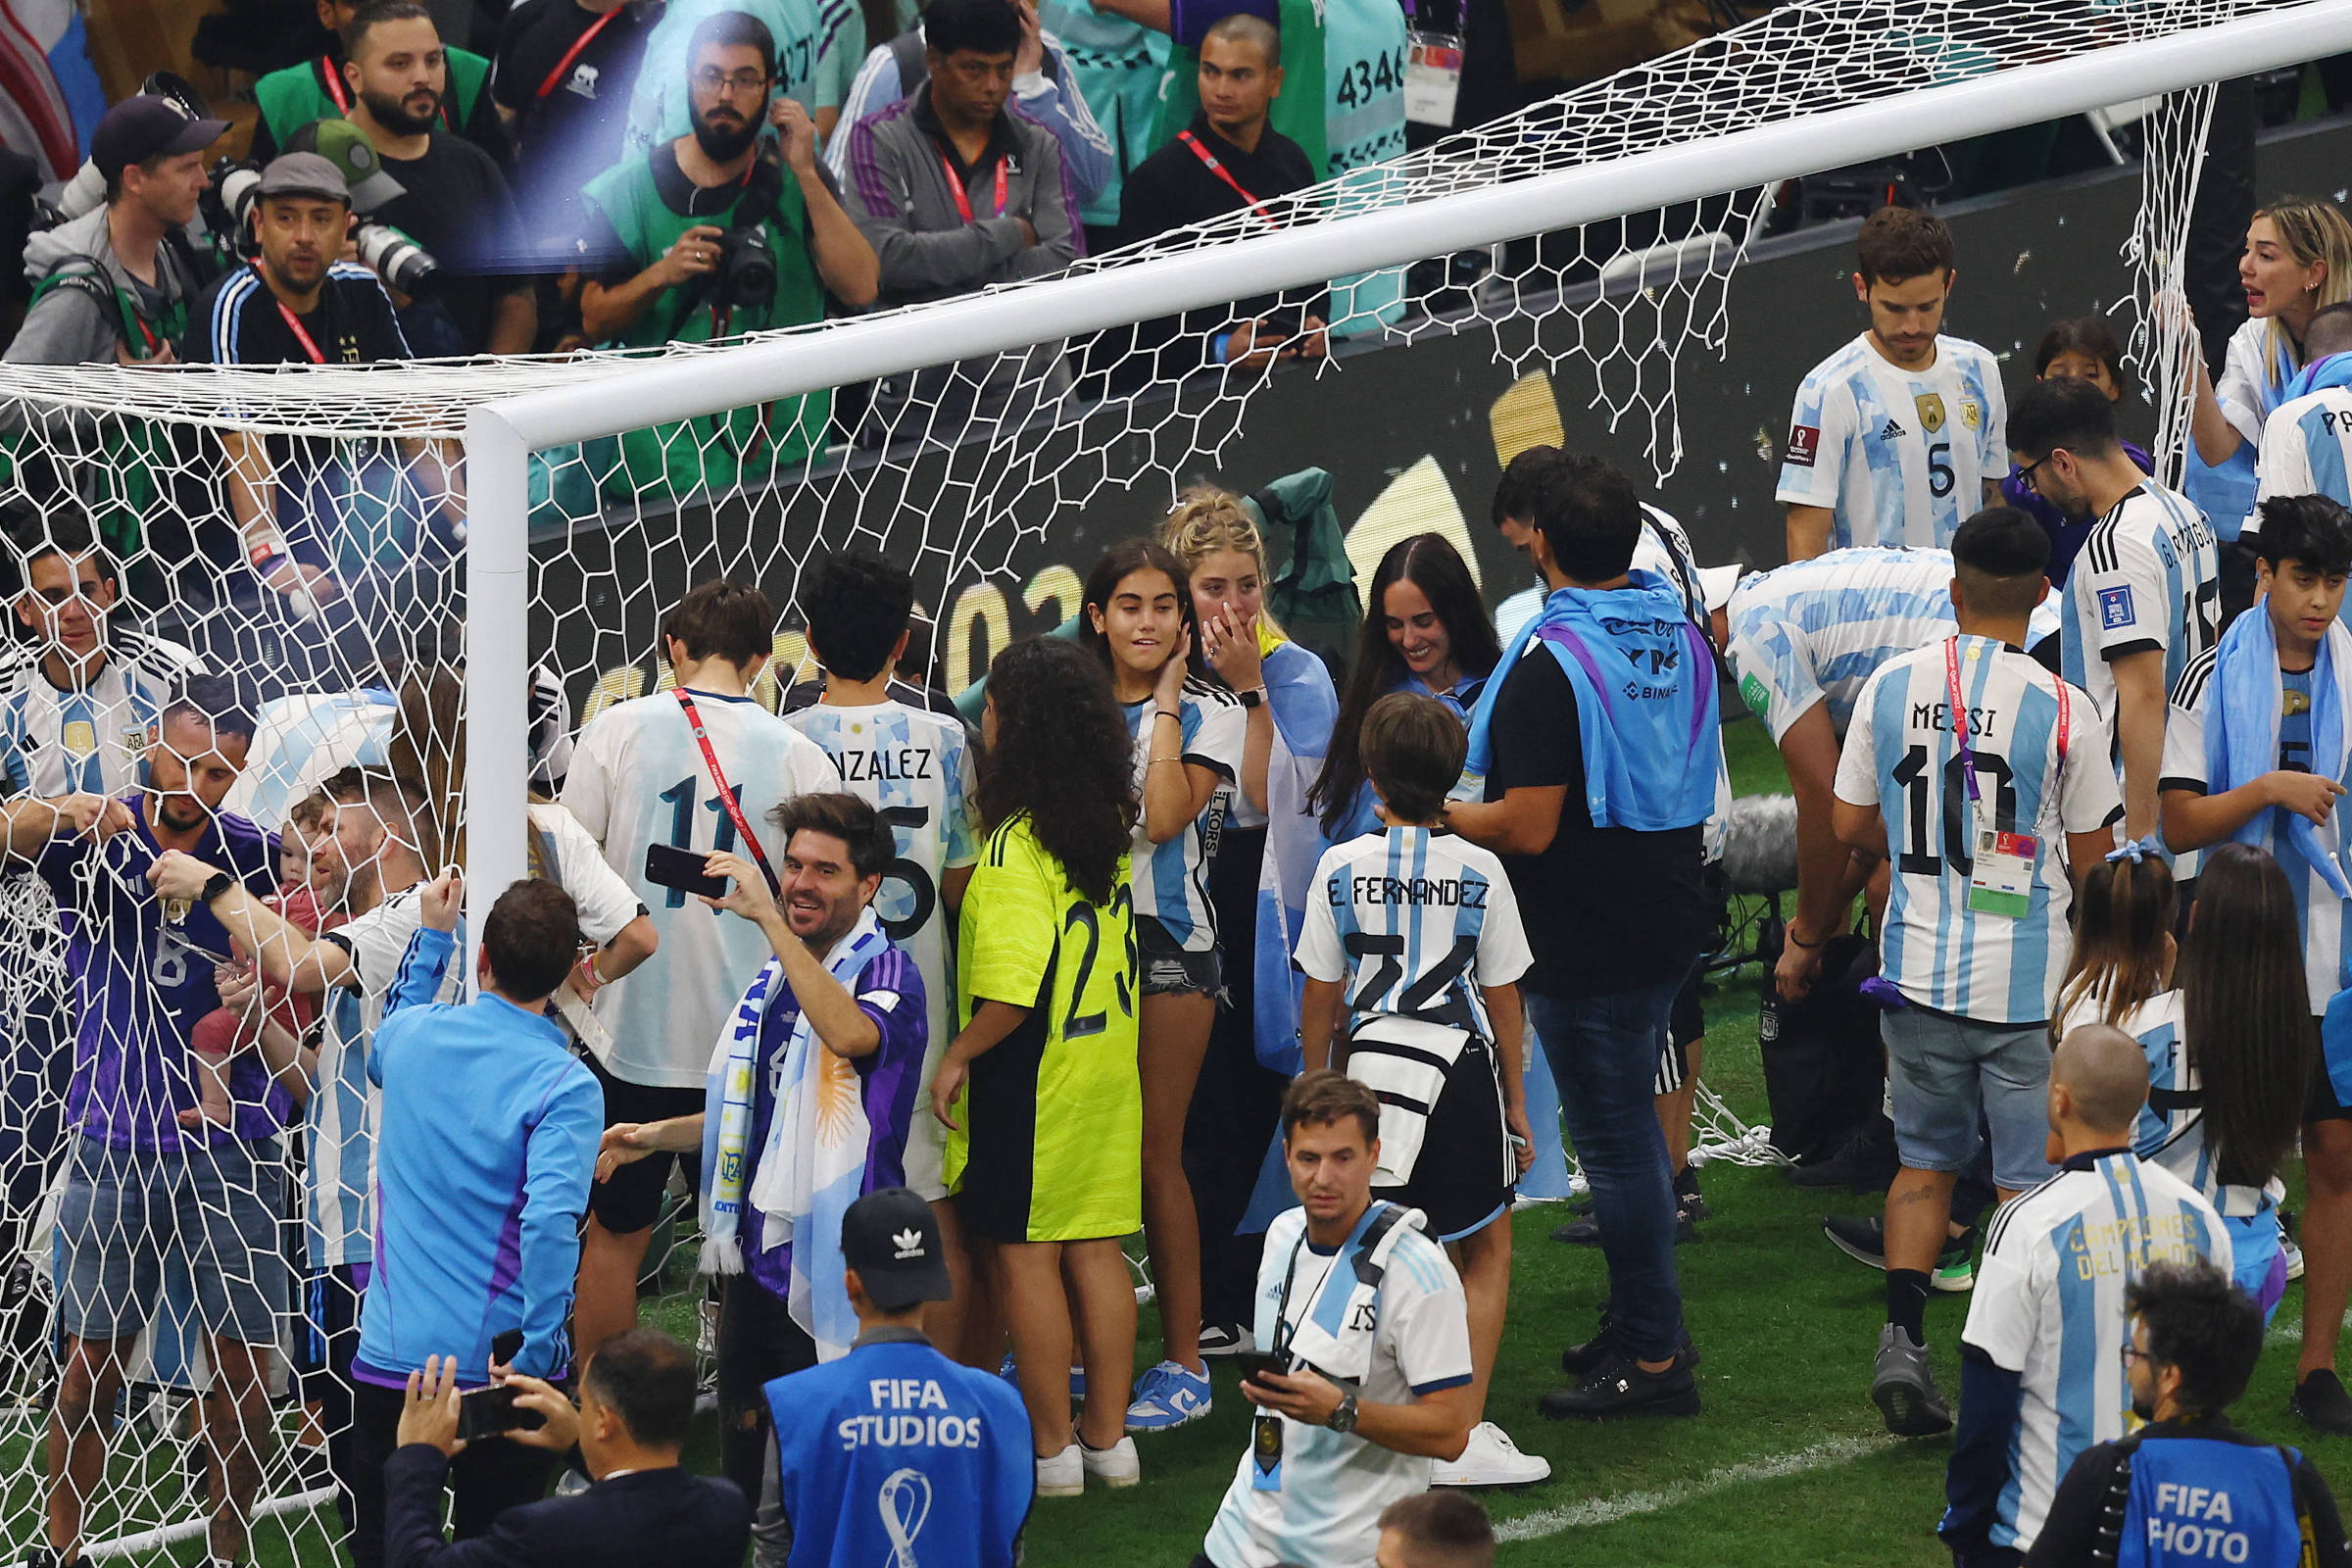 Le filet de but du stade Lusail devient un trophée pour les joueurs, proches et supporters argentins – 18/12/2022 – Sport